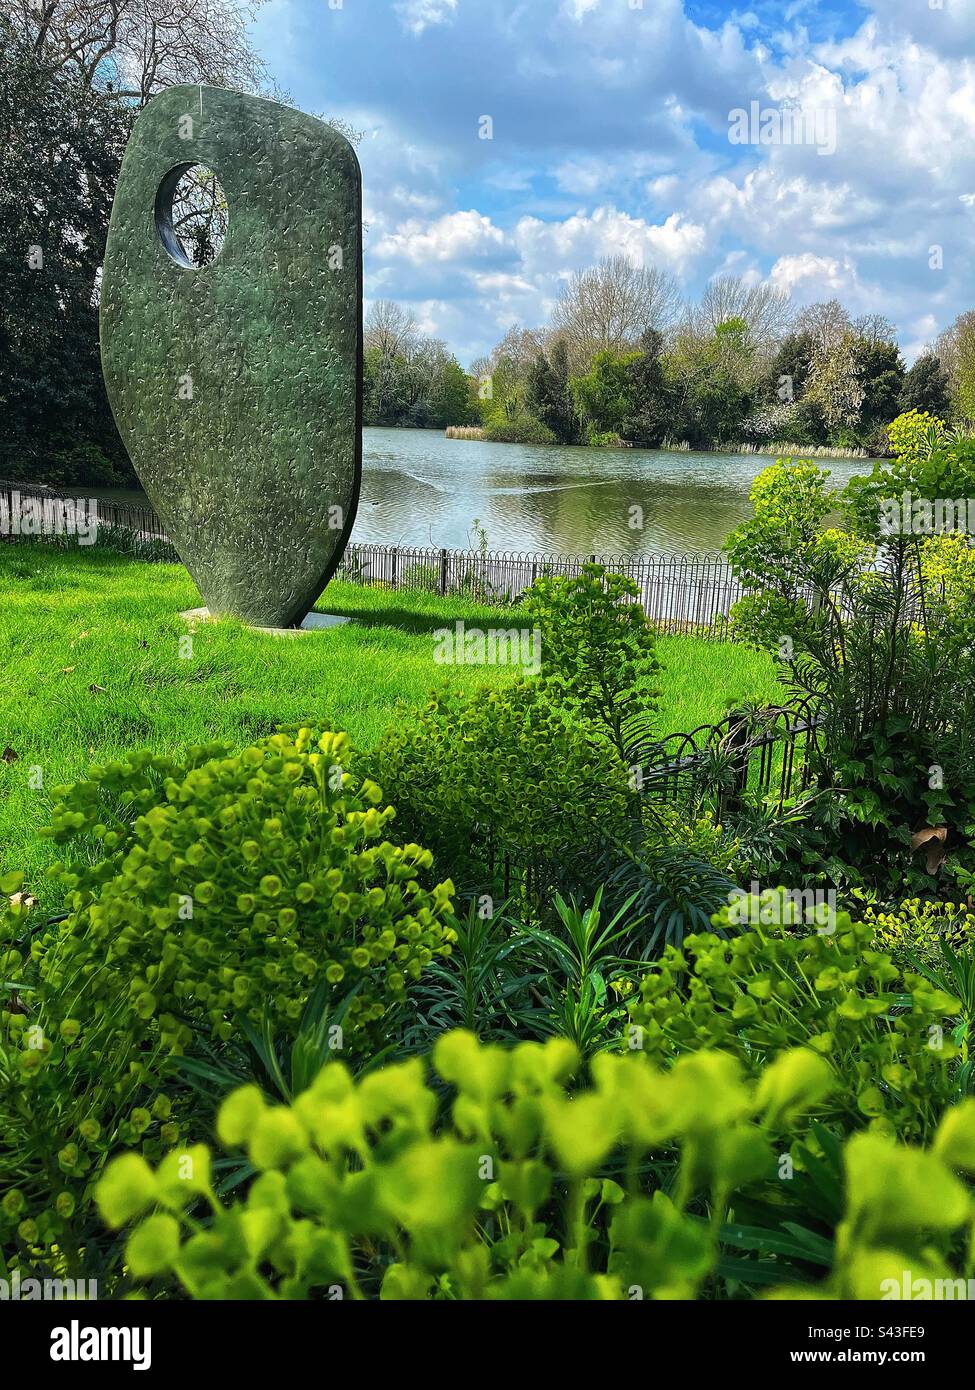 „Single Form (Memorial)“ südlich des Sees, Battersea Park, eine moderne Skulptur von Dame Barbara Hepworth ein Denkmal des UN-Generalsekretärs Dag Hammarskjöld. Klasse II gelistet Stockfoto